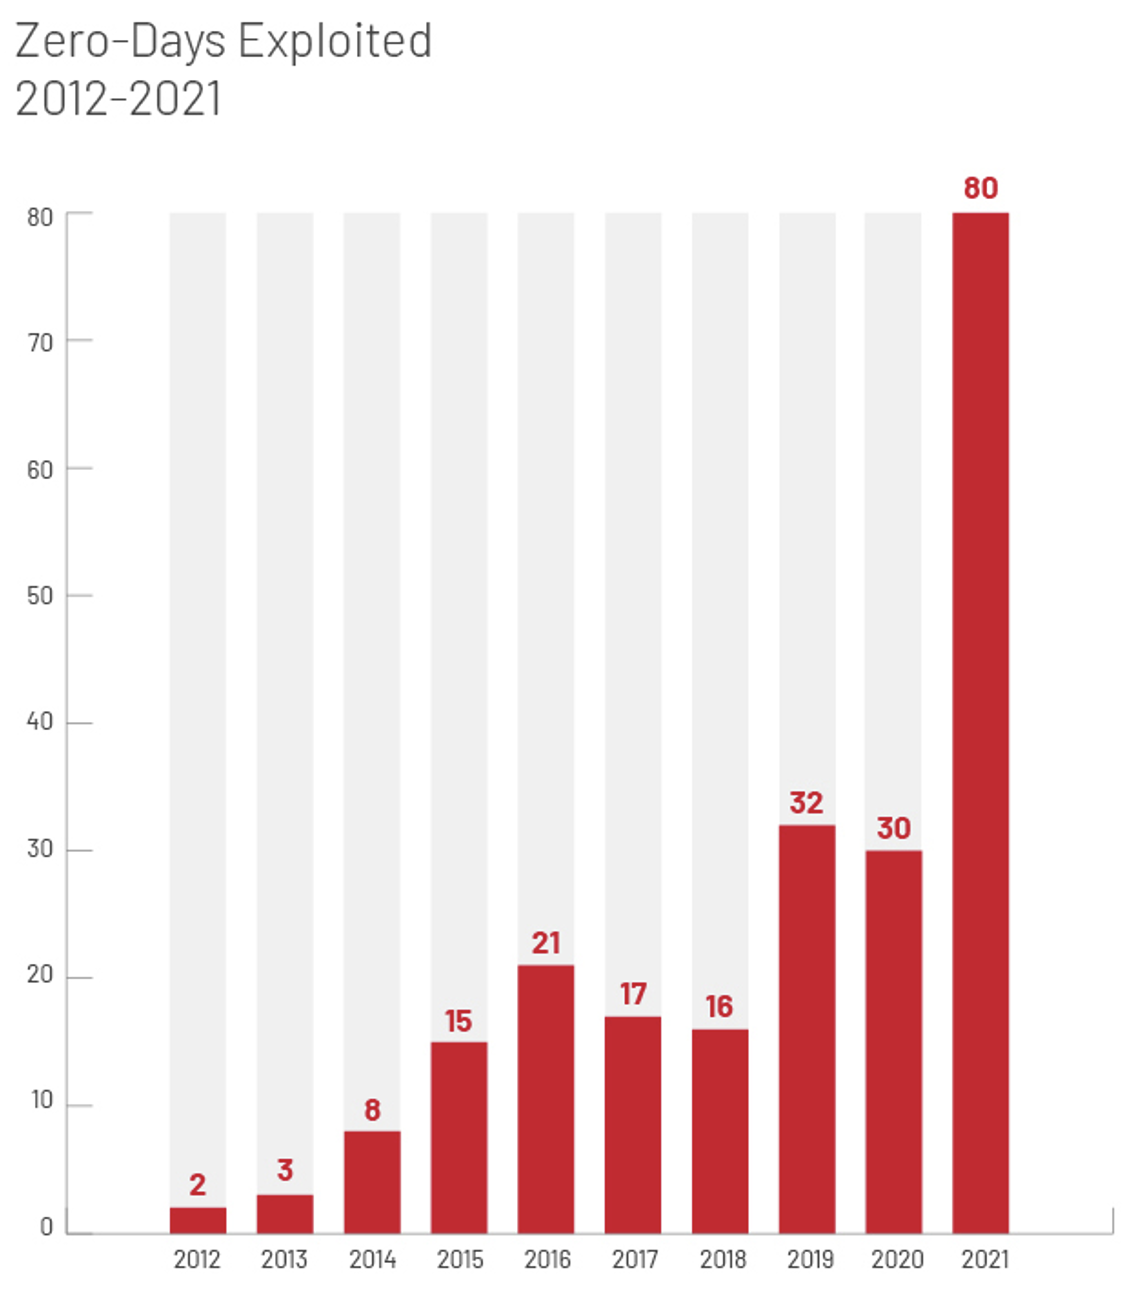 Выявленные случаи глобального использования эксплойтов нулевого дня в период с 2012 по 2021 год